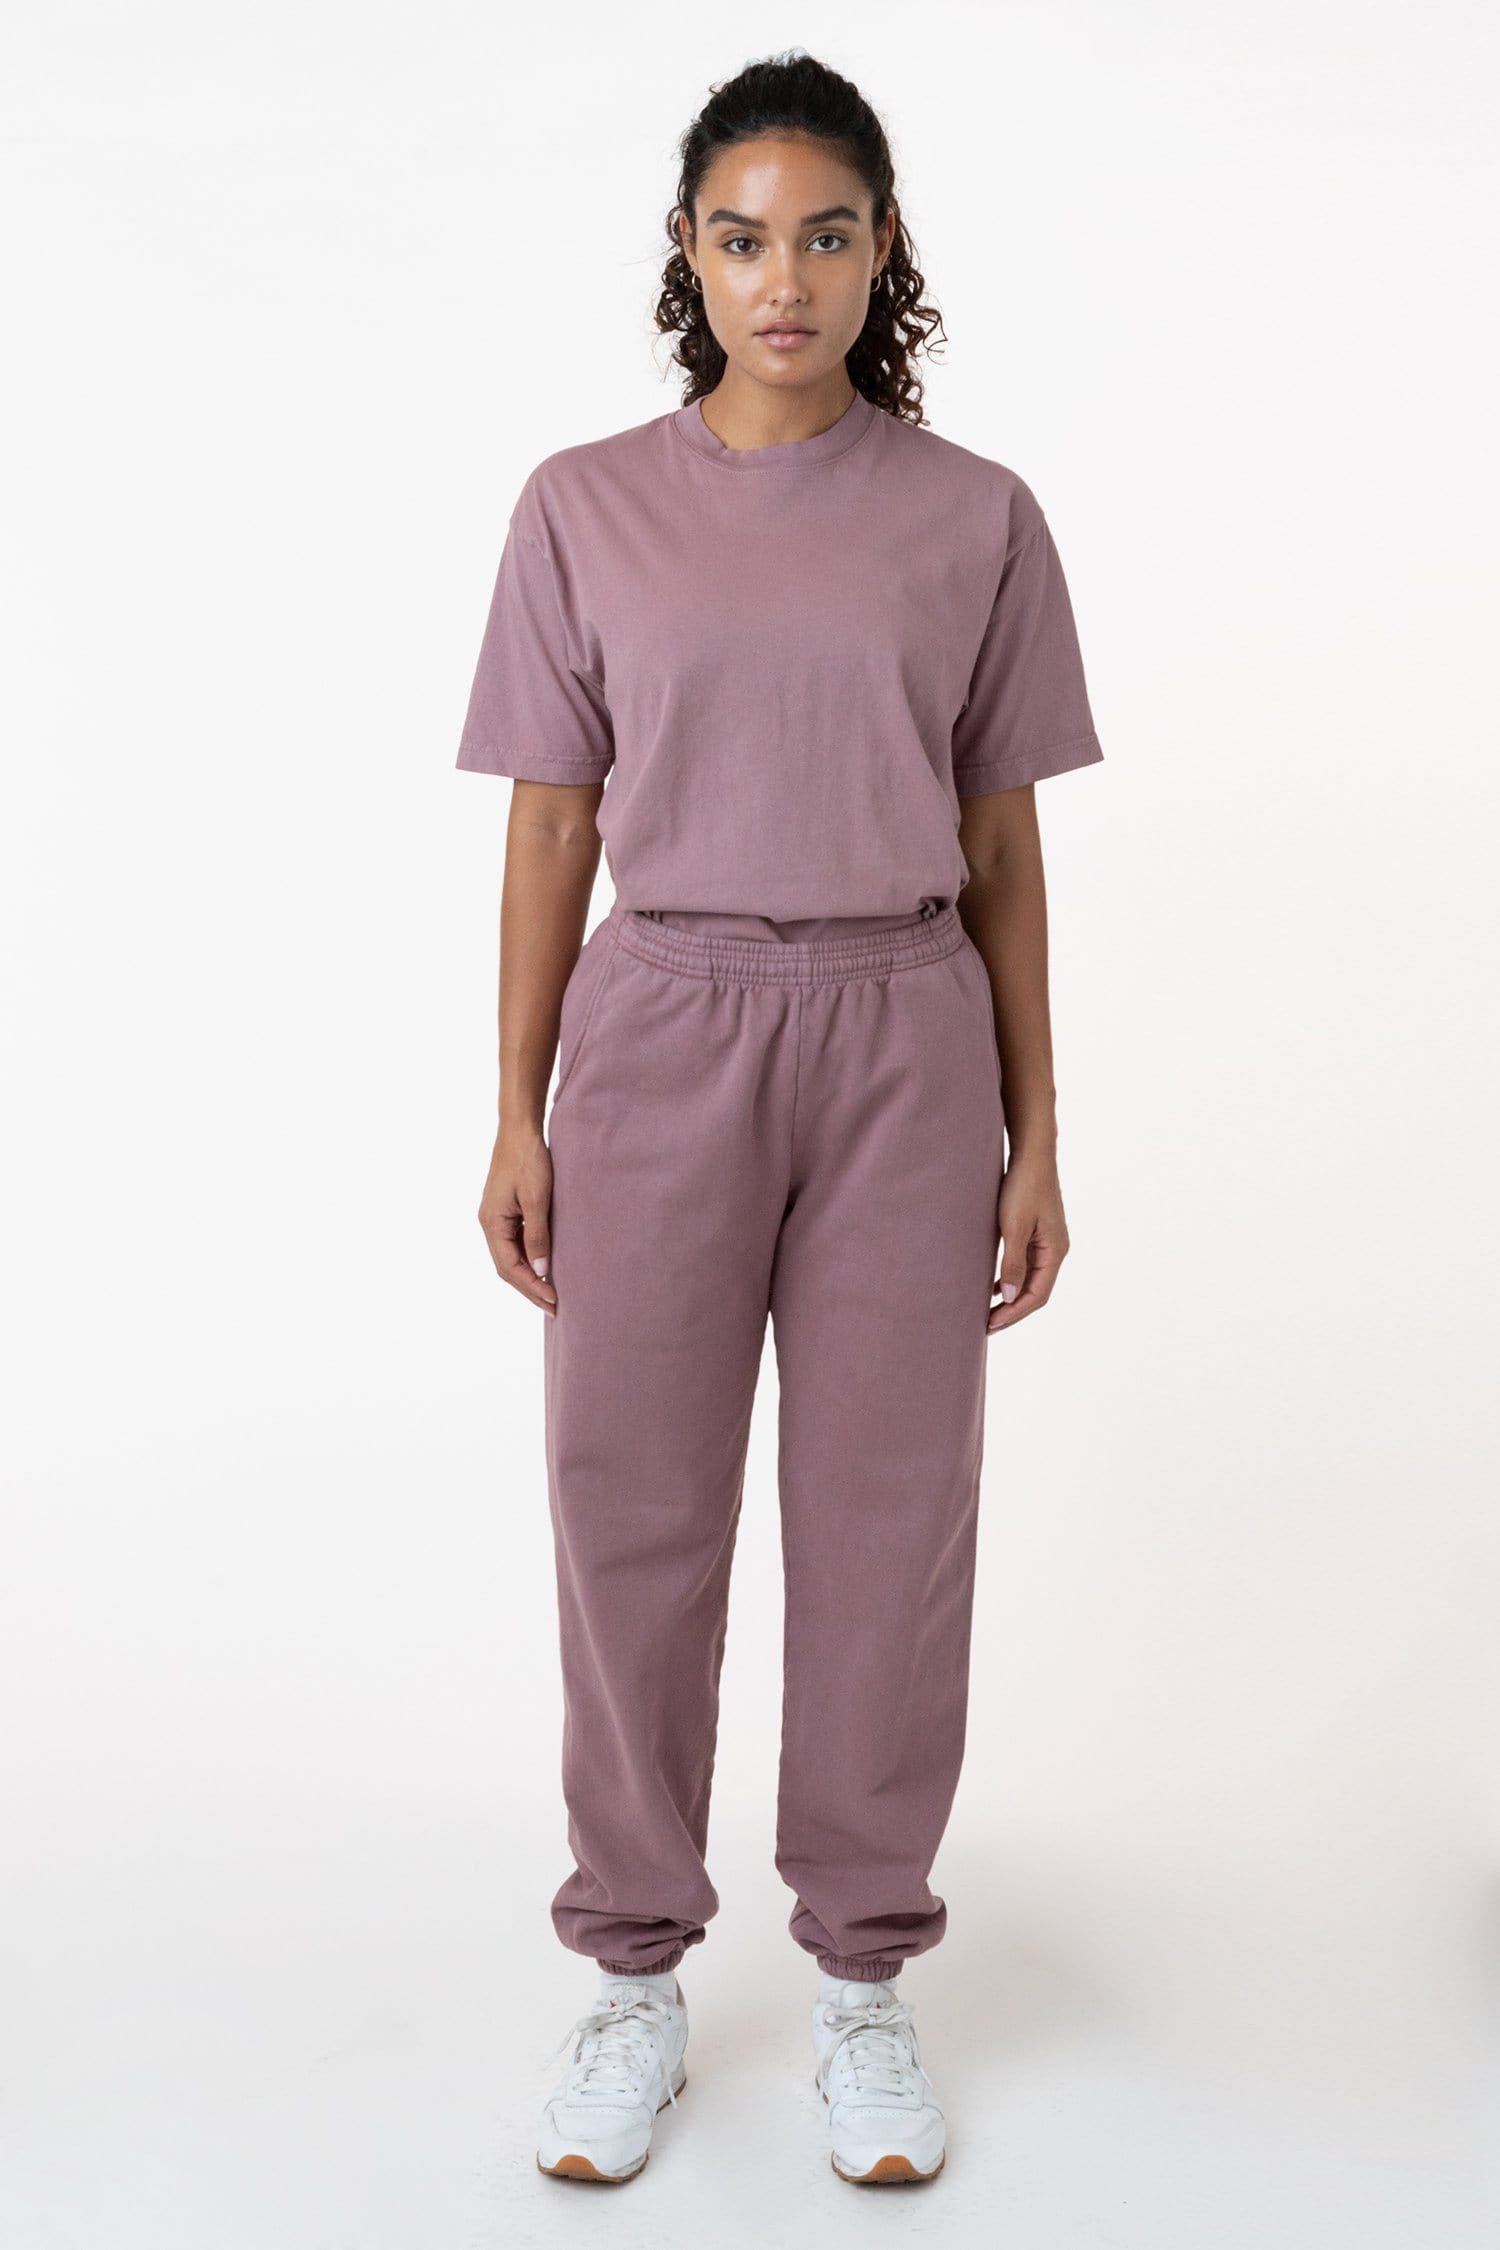 HF04 - Heavy Fleece Sweatpants (Garment Dye) – Los Angeles Apparel